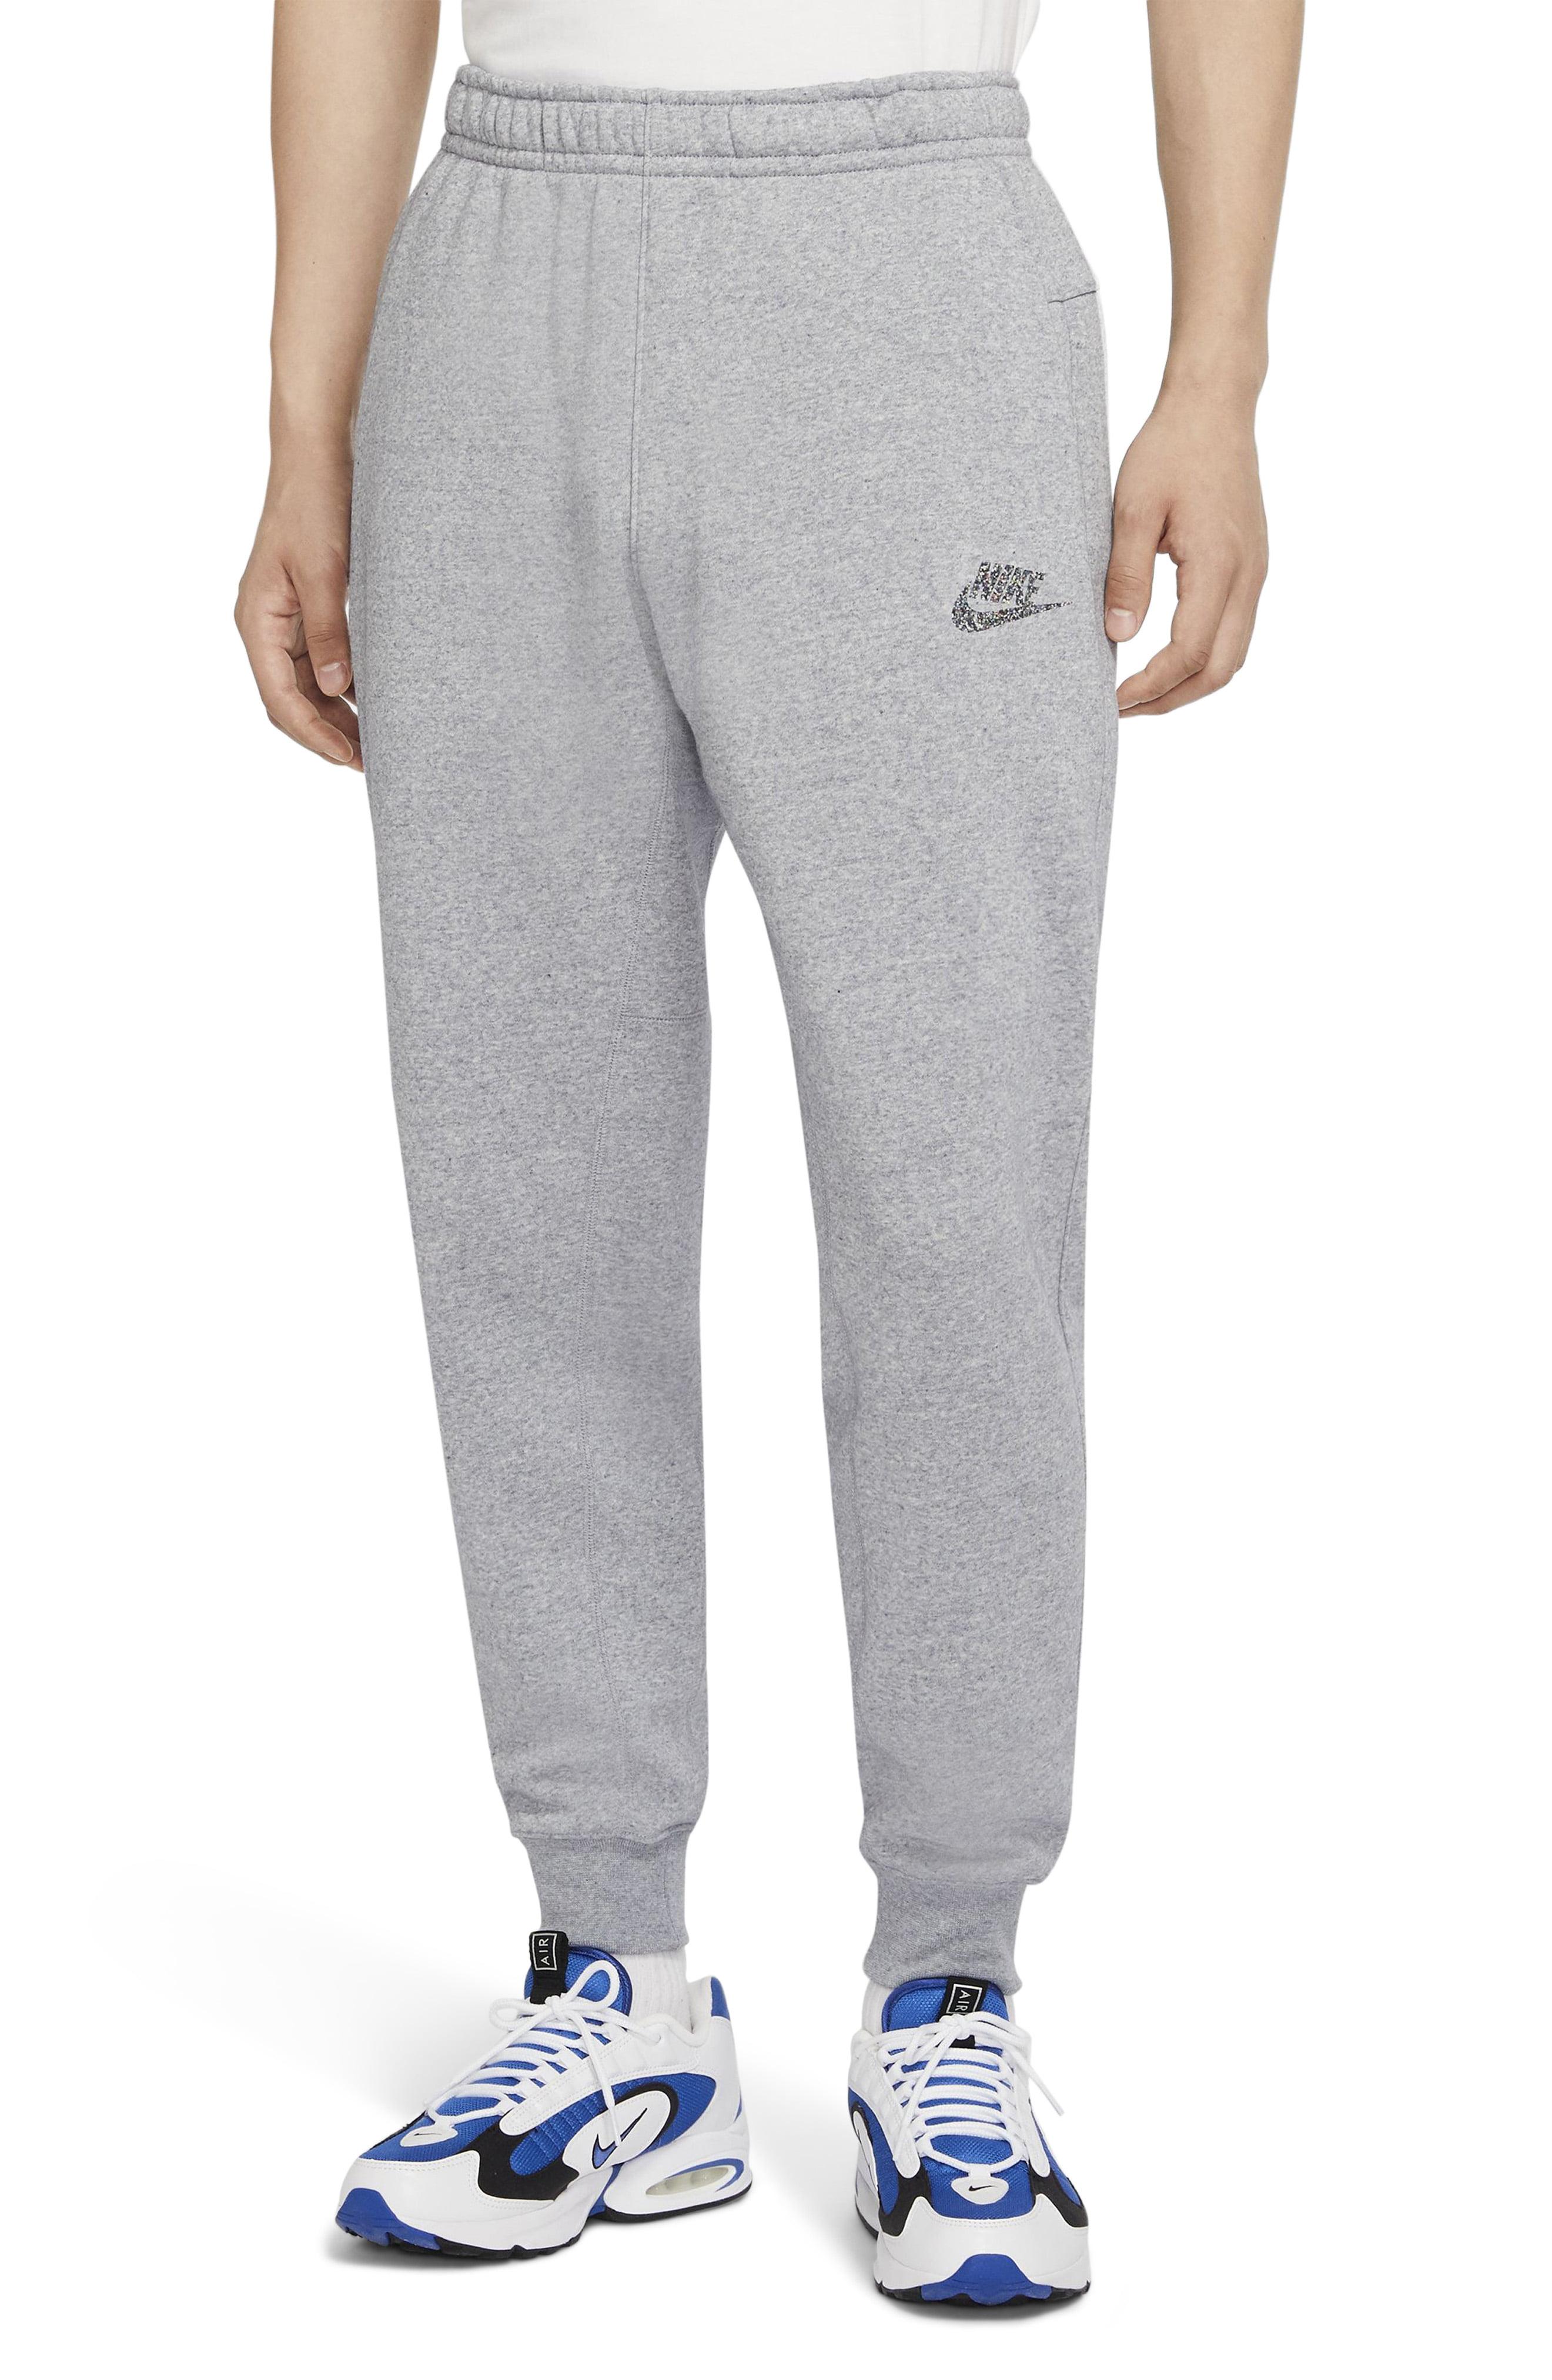 Nike Fleece Sportswear Jogger Pants in Gray for Men - Lyst